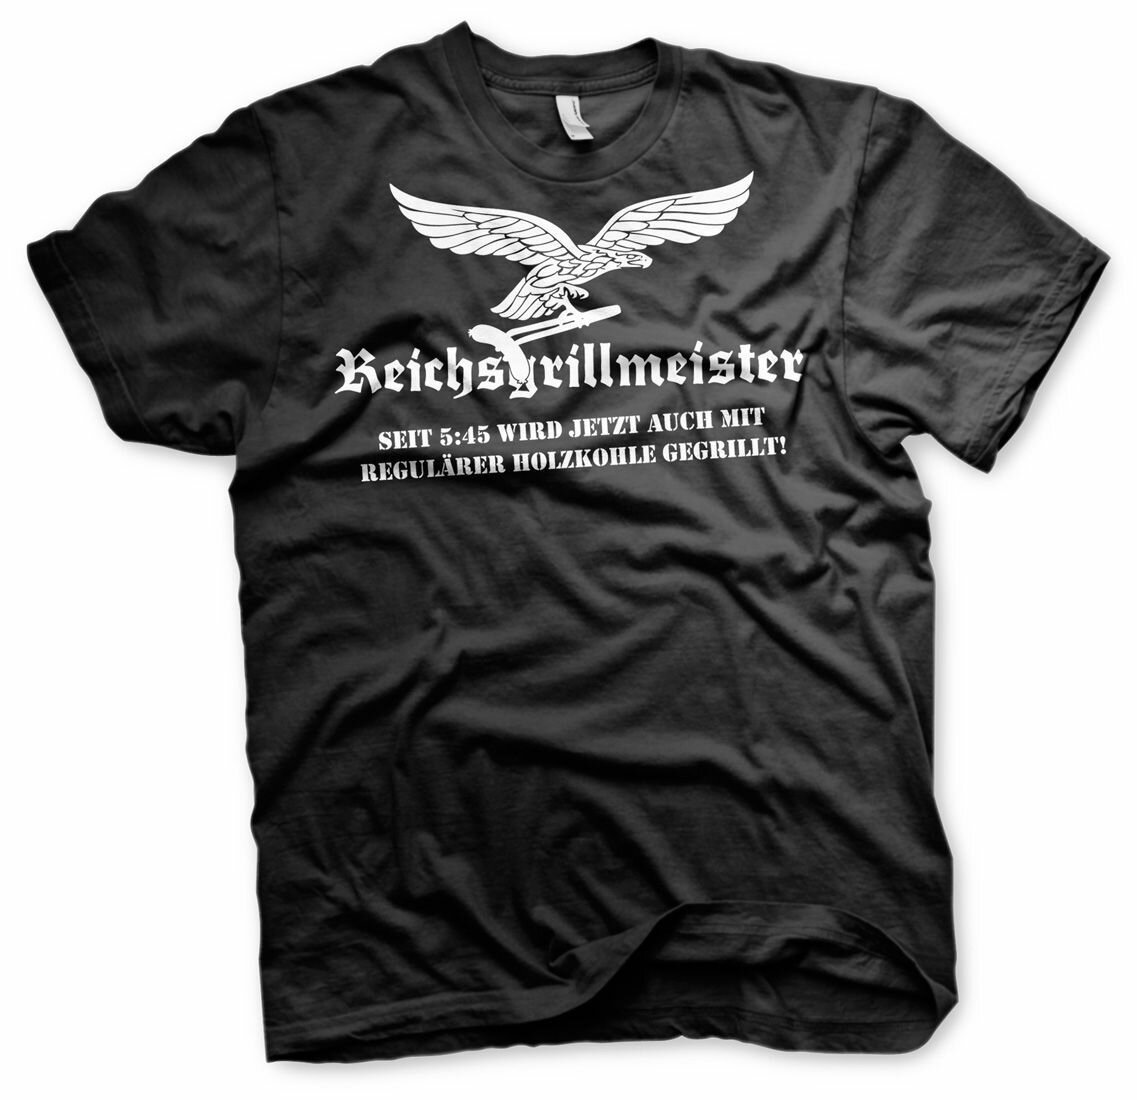 Reichsgrillmeister 2 -Tshirt € G, 16,90 Schürze Barbeque Kugelgrill Grillshirt